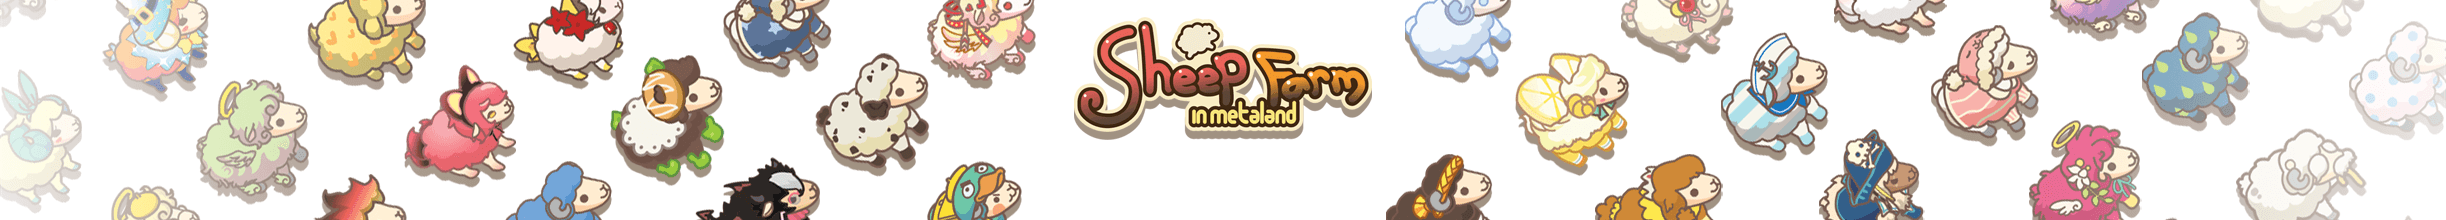 SheepFarm